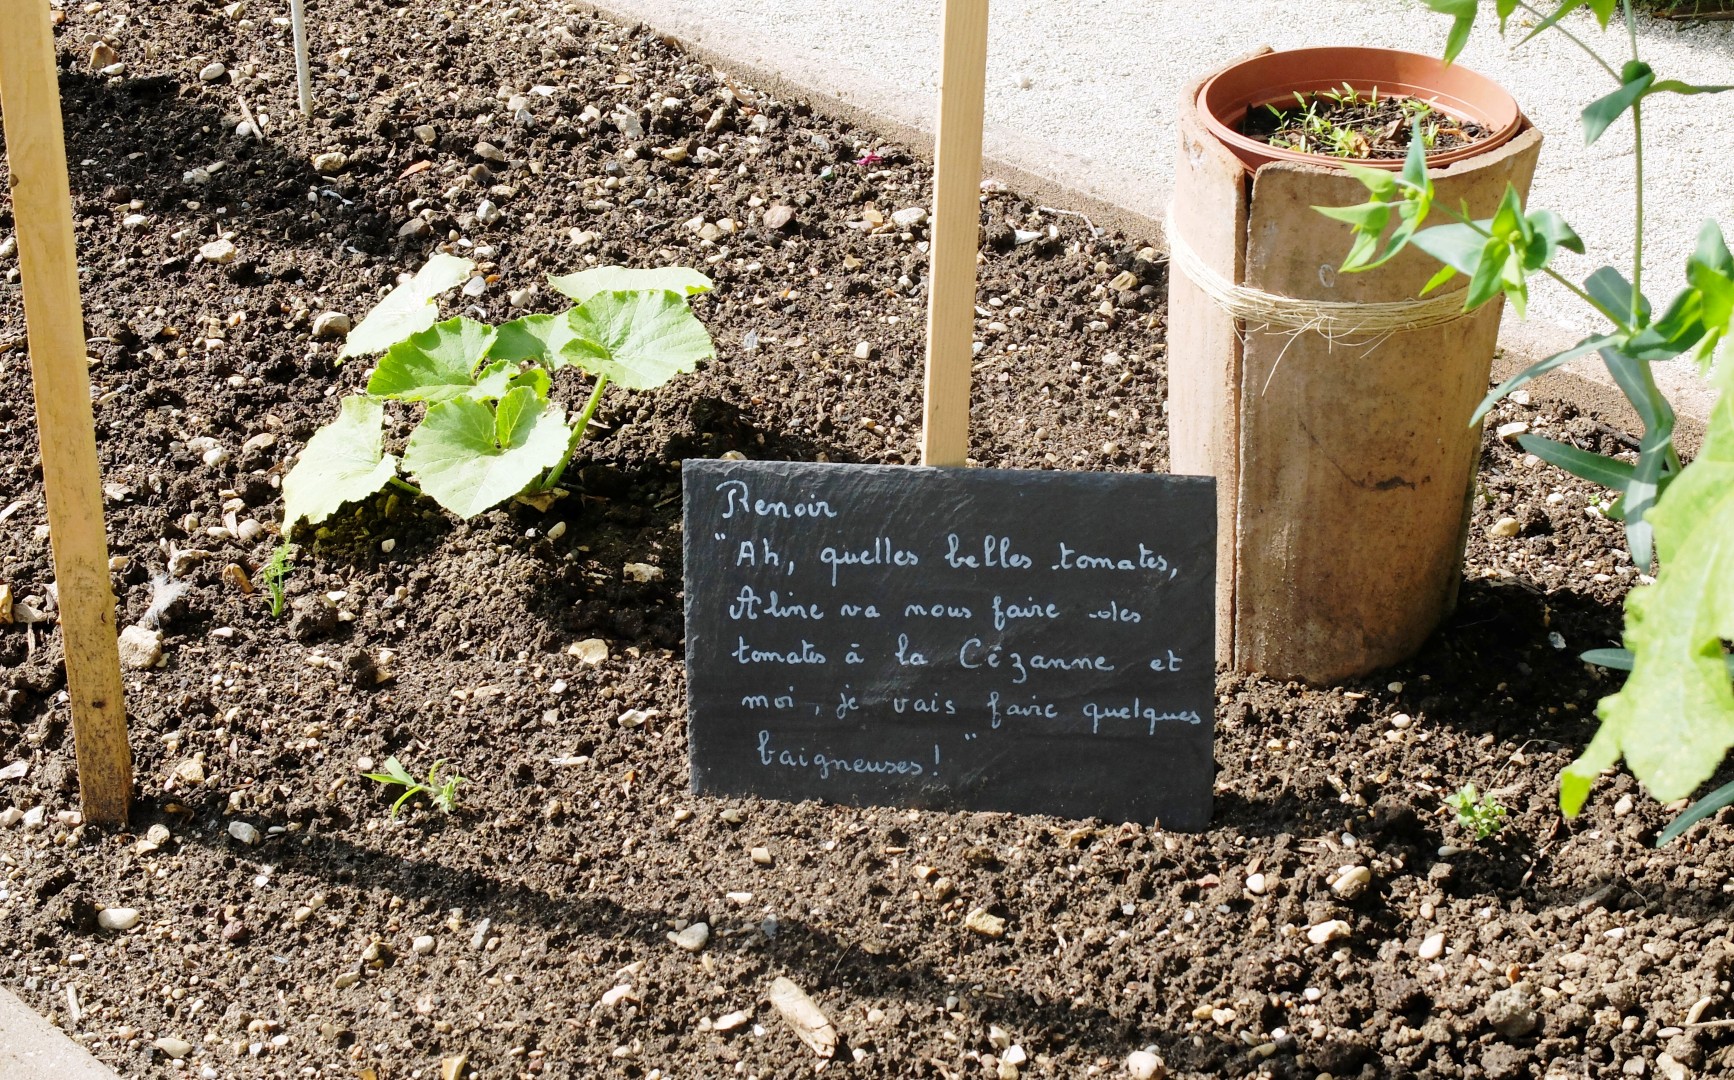 Propriété Caillebotte, Yerres - Le jardin potager